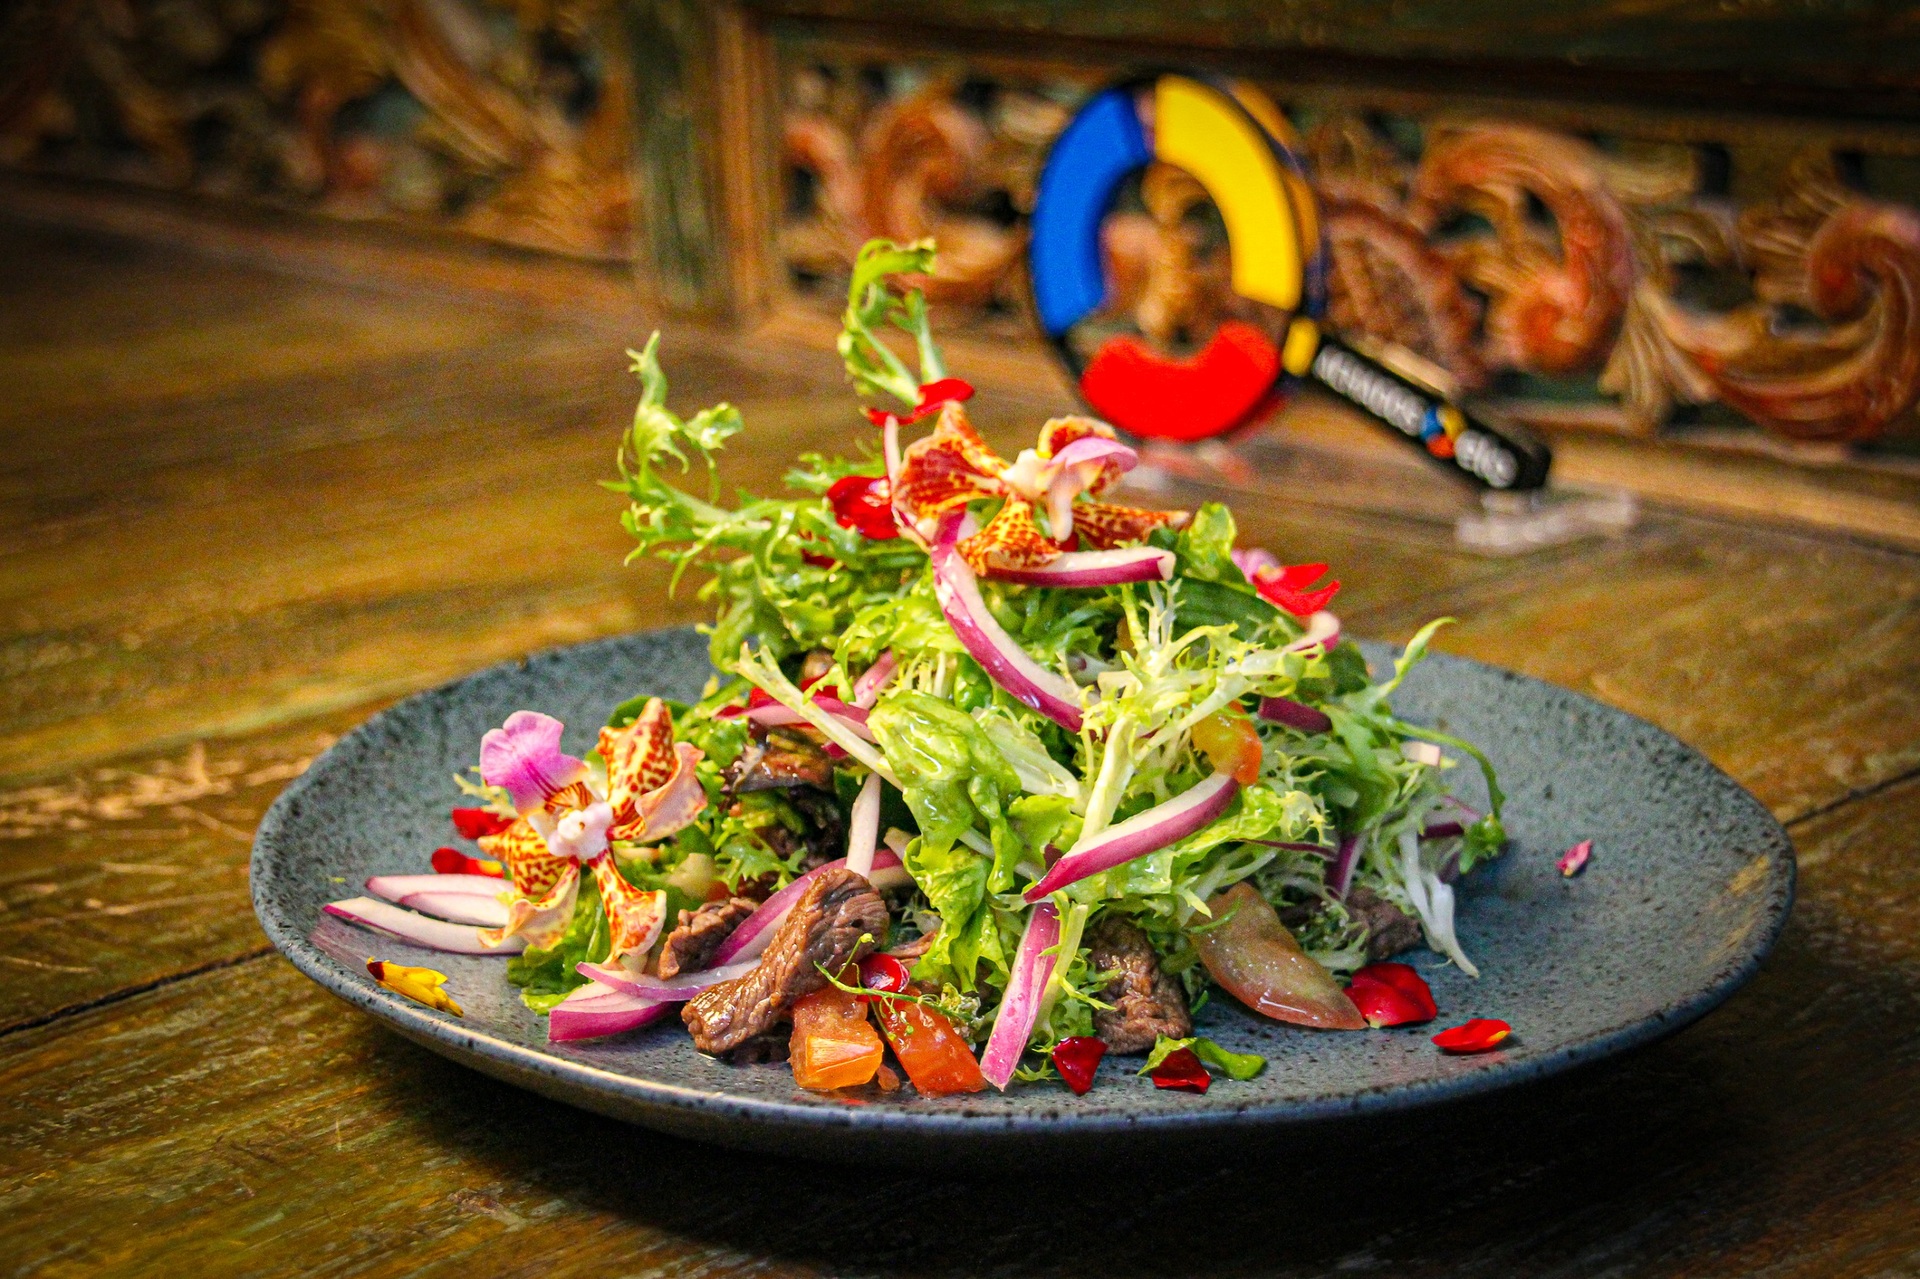 Prove a Thai beef Salad, feita com tiras delicadas de mignon no molho de ostras com folhas verdes, cebola roxa e tomate